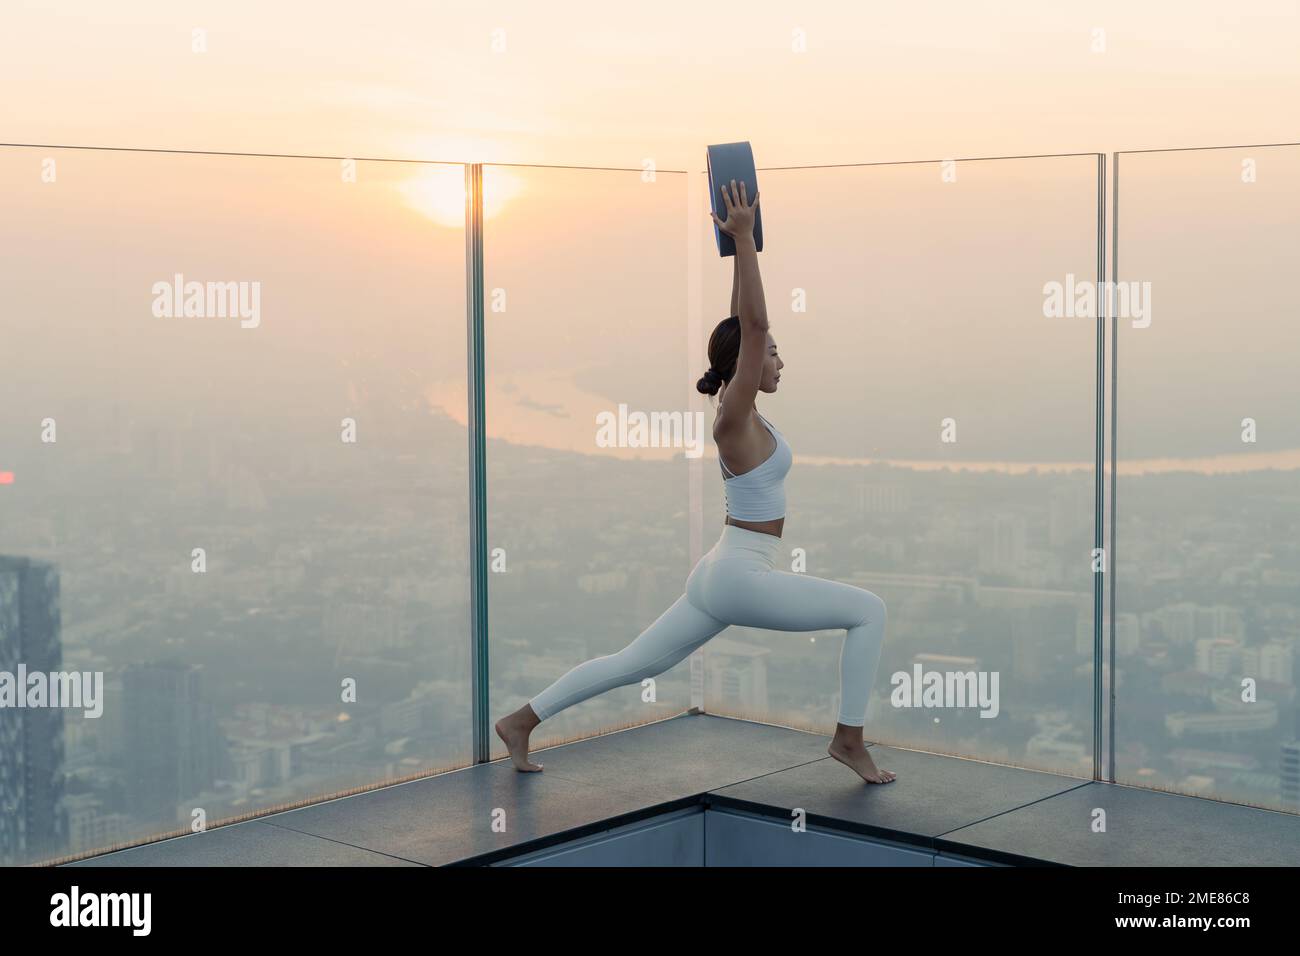 Ritratto di giovane bella donna asiatica che pratica un esercizio di yoga sui tetti durante il tramonto. Calma e relax, felicità femminile. Immagine orizzontale Foto Stock